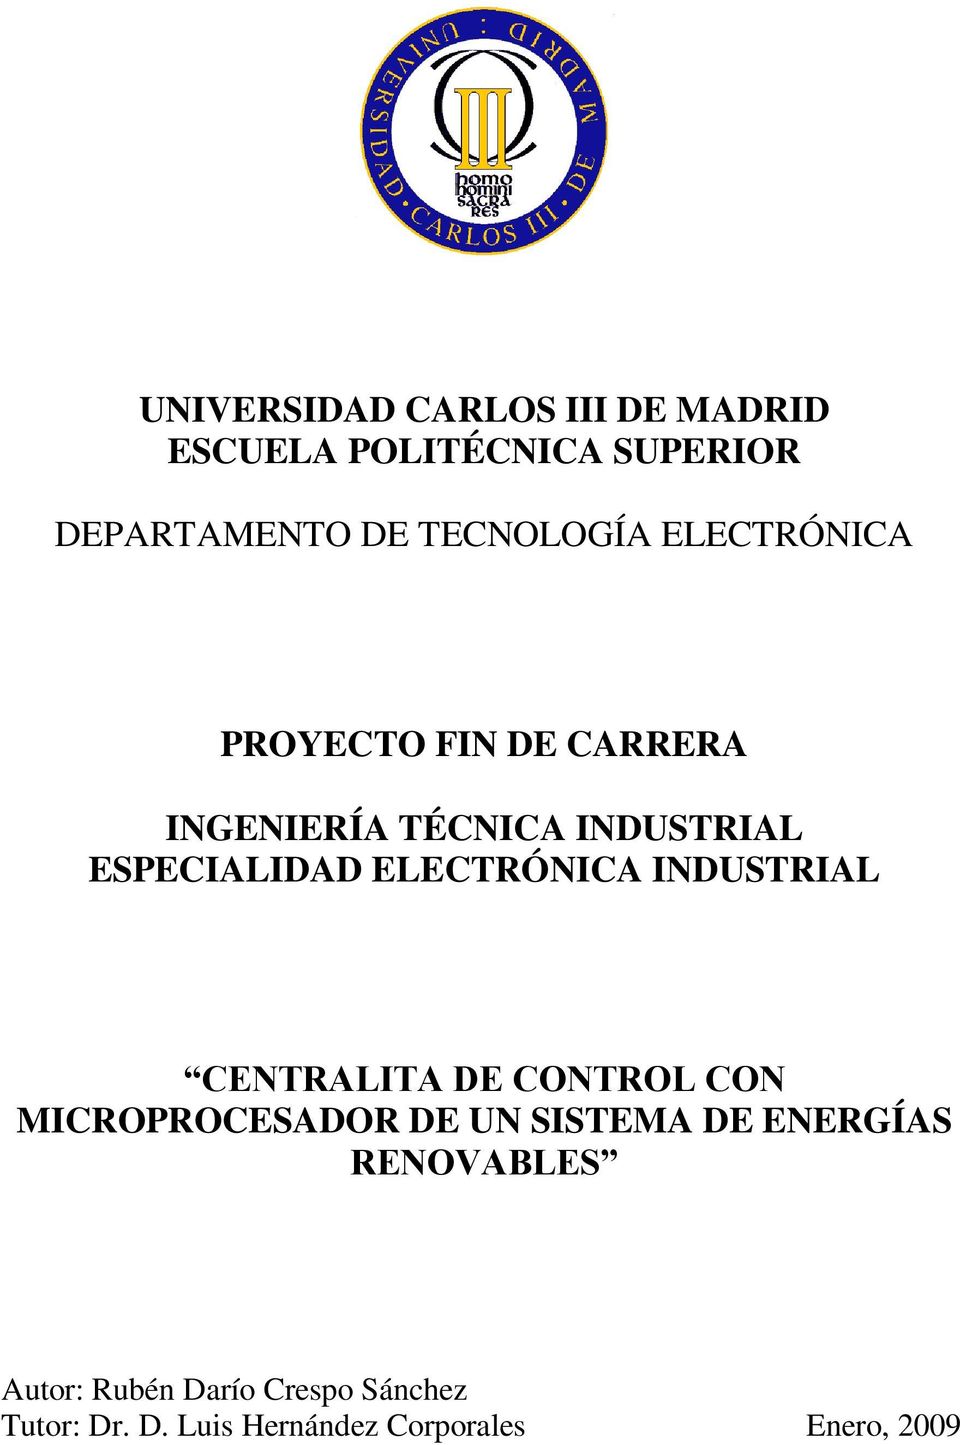 ELECTRÓNICA INDUSTRIAL CENTRALITA DE CONTROL CON MICROPROCESADOR DE UN SISTEMA DE